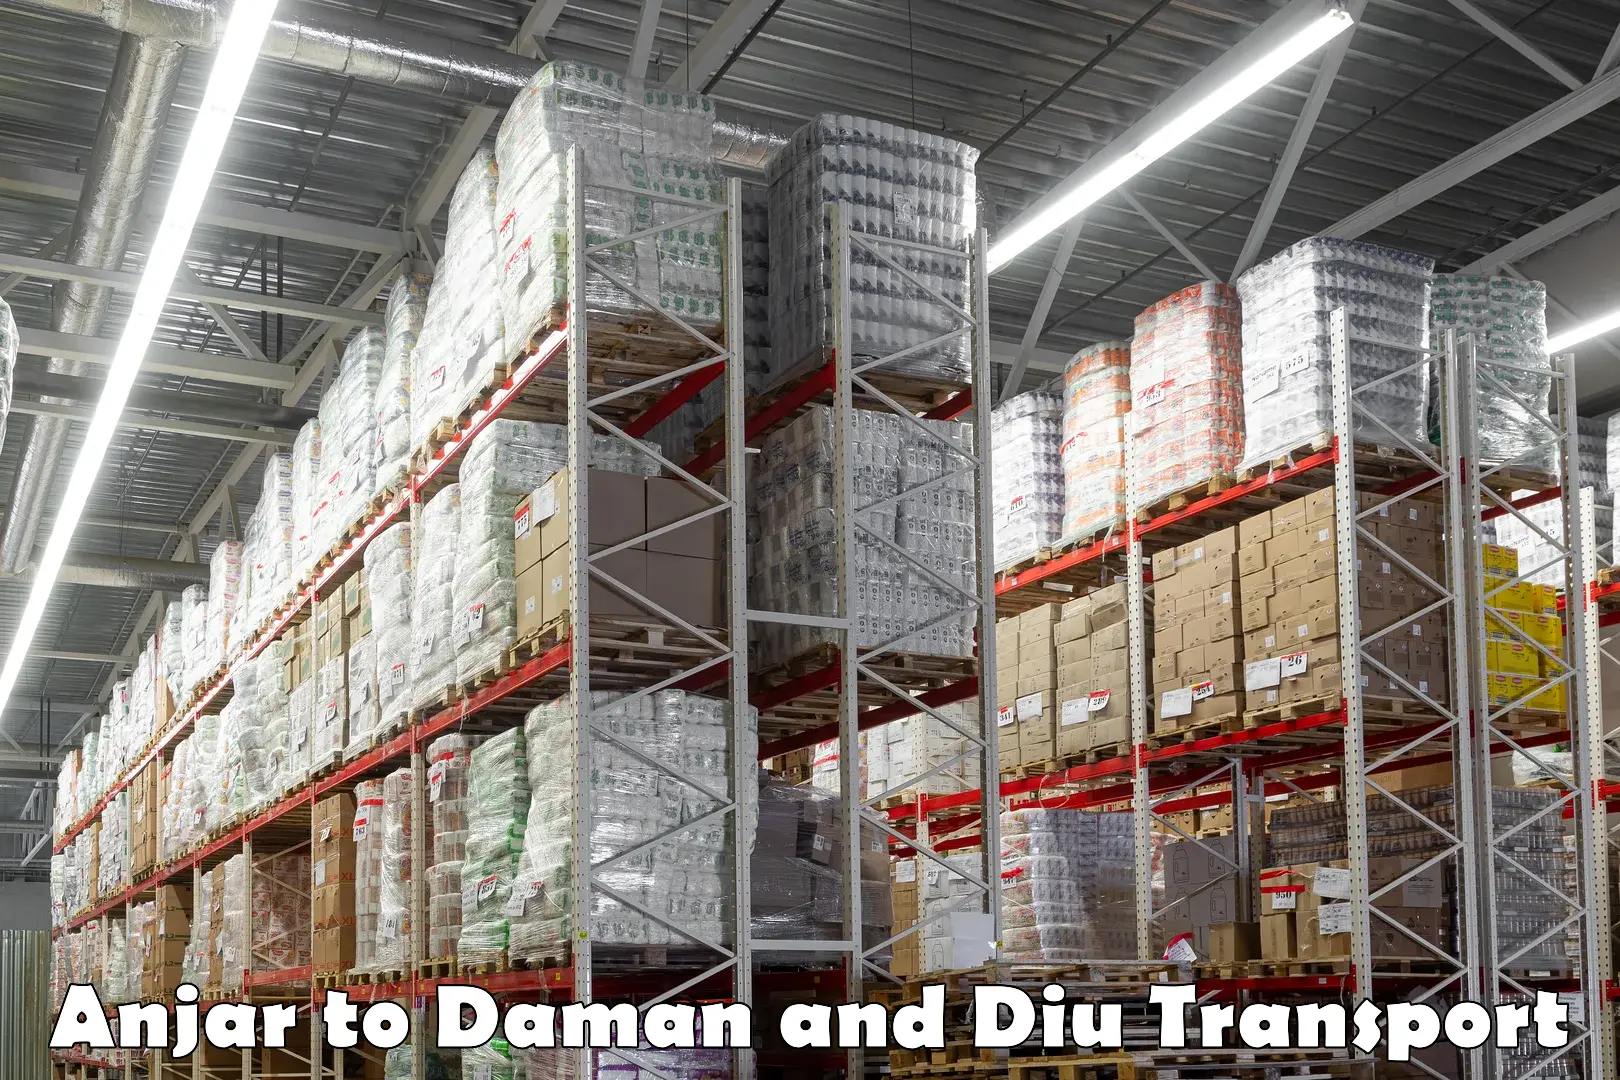 Furniture transport service Anjar to Daman and Diu